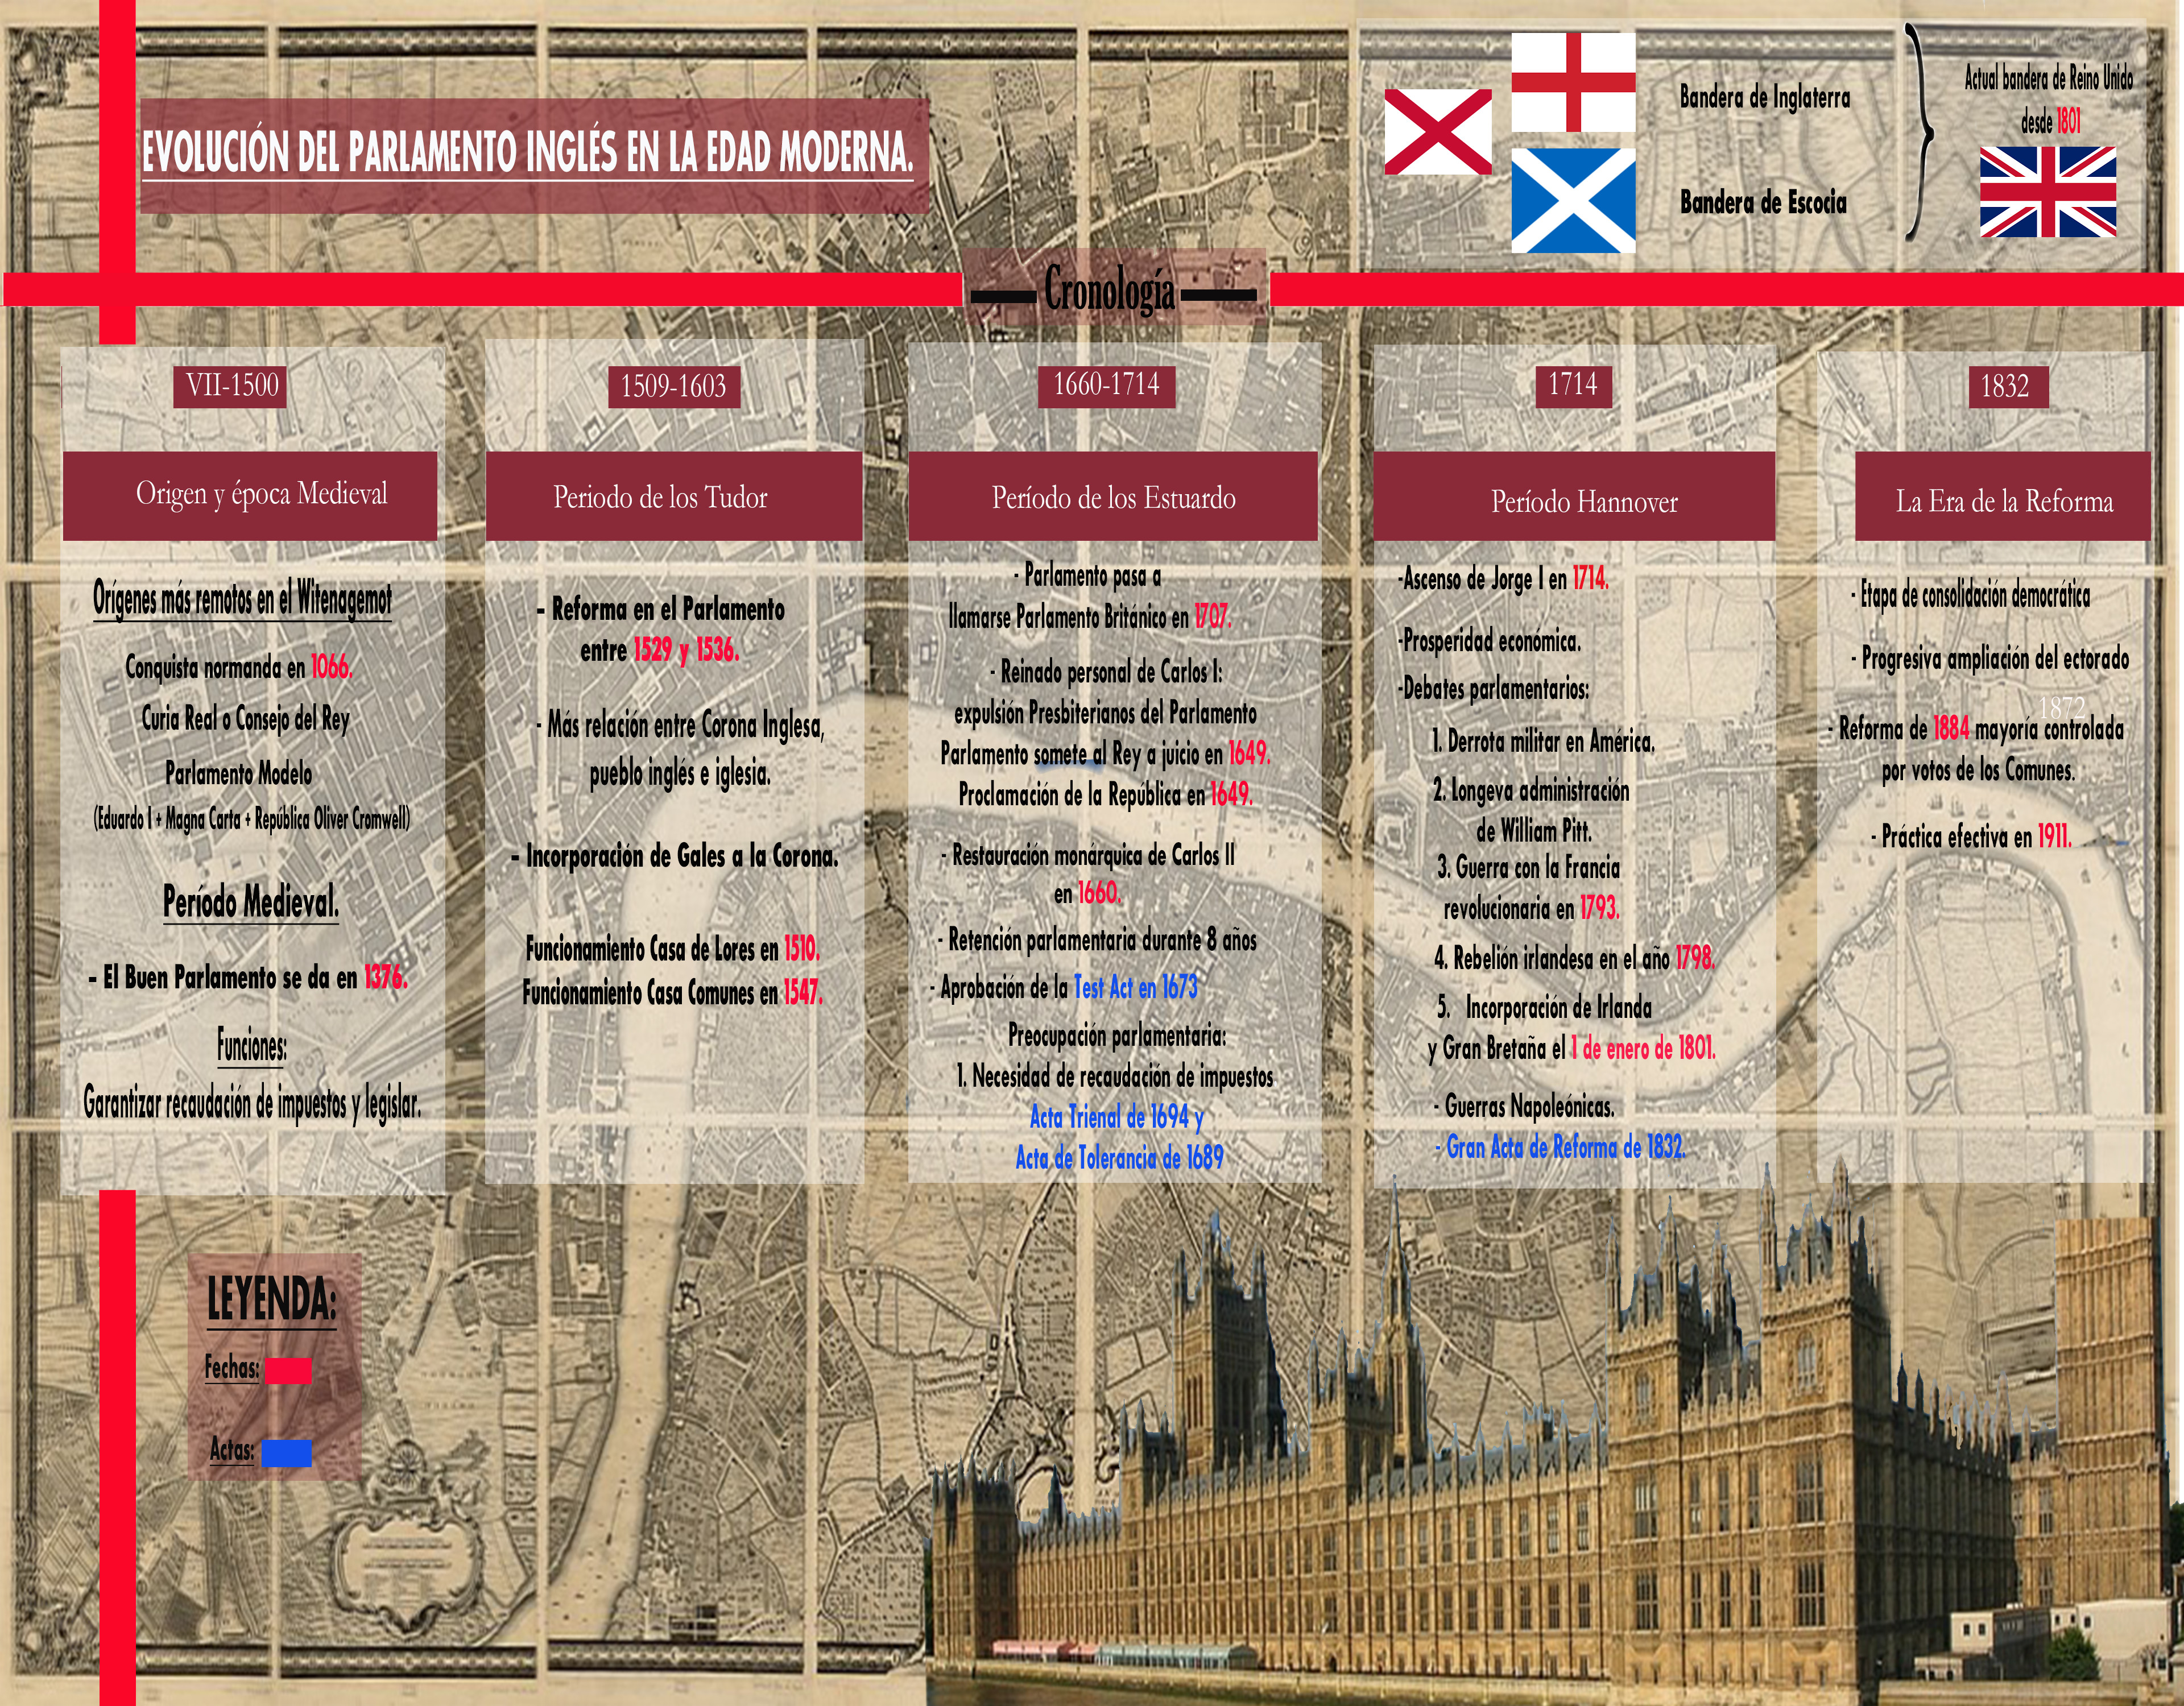 Evolución del Parlamento Inglés en la Edad Moderna